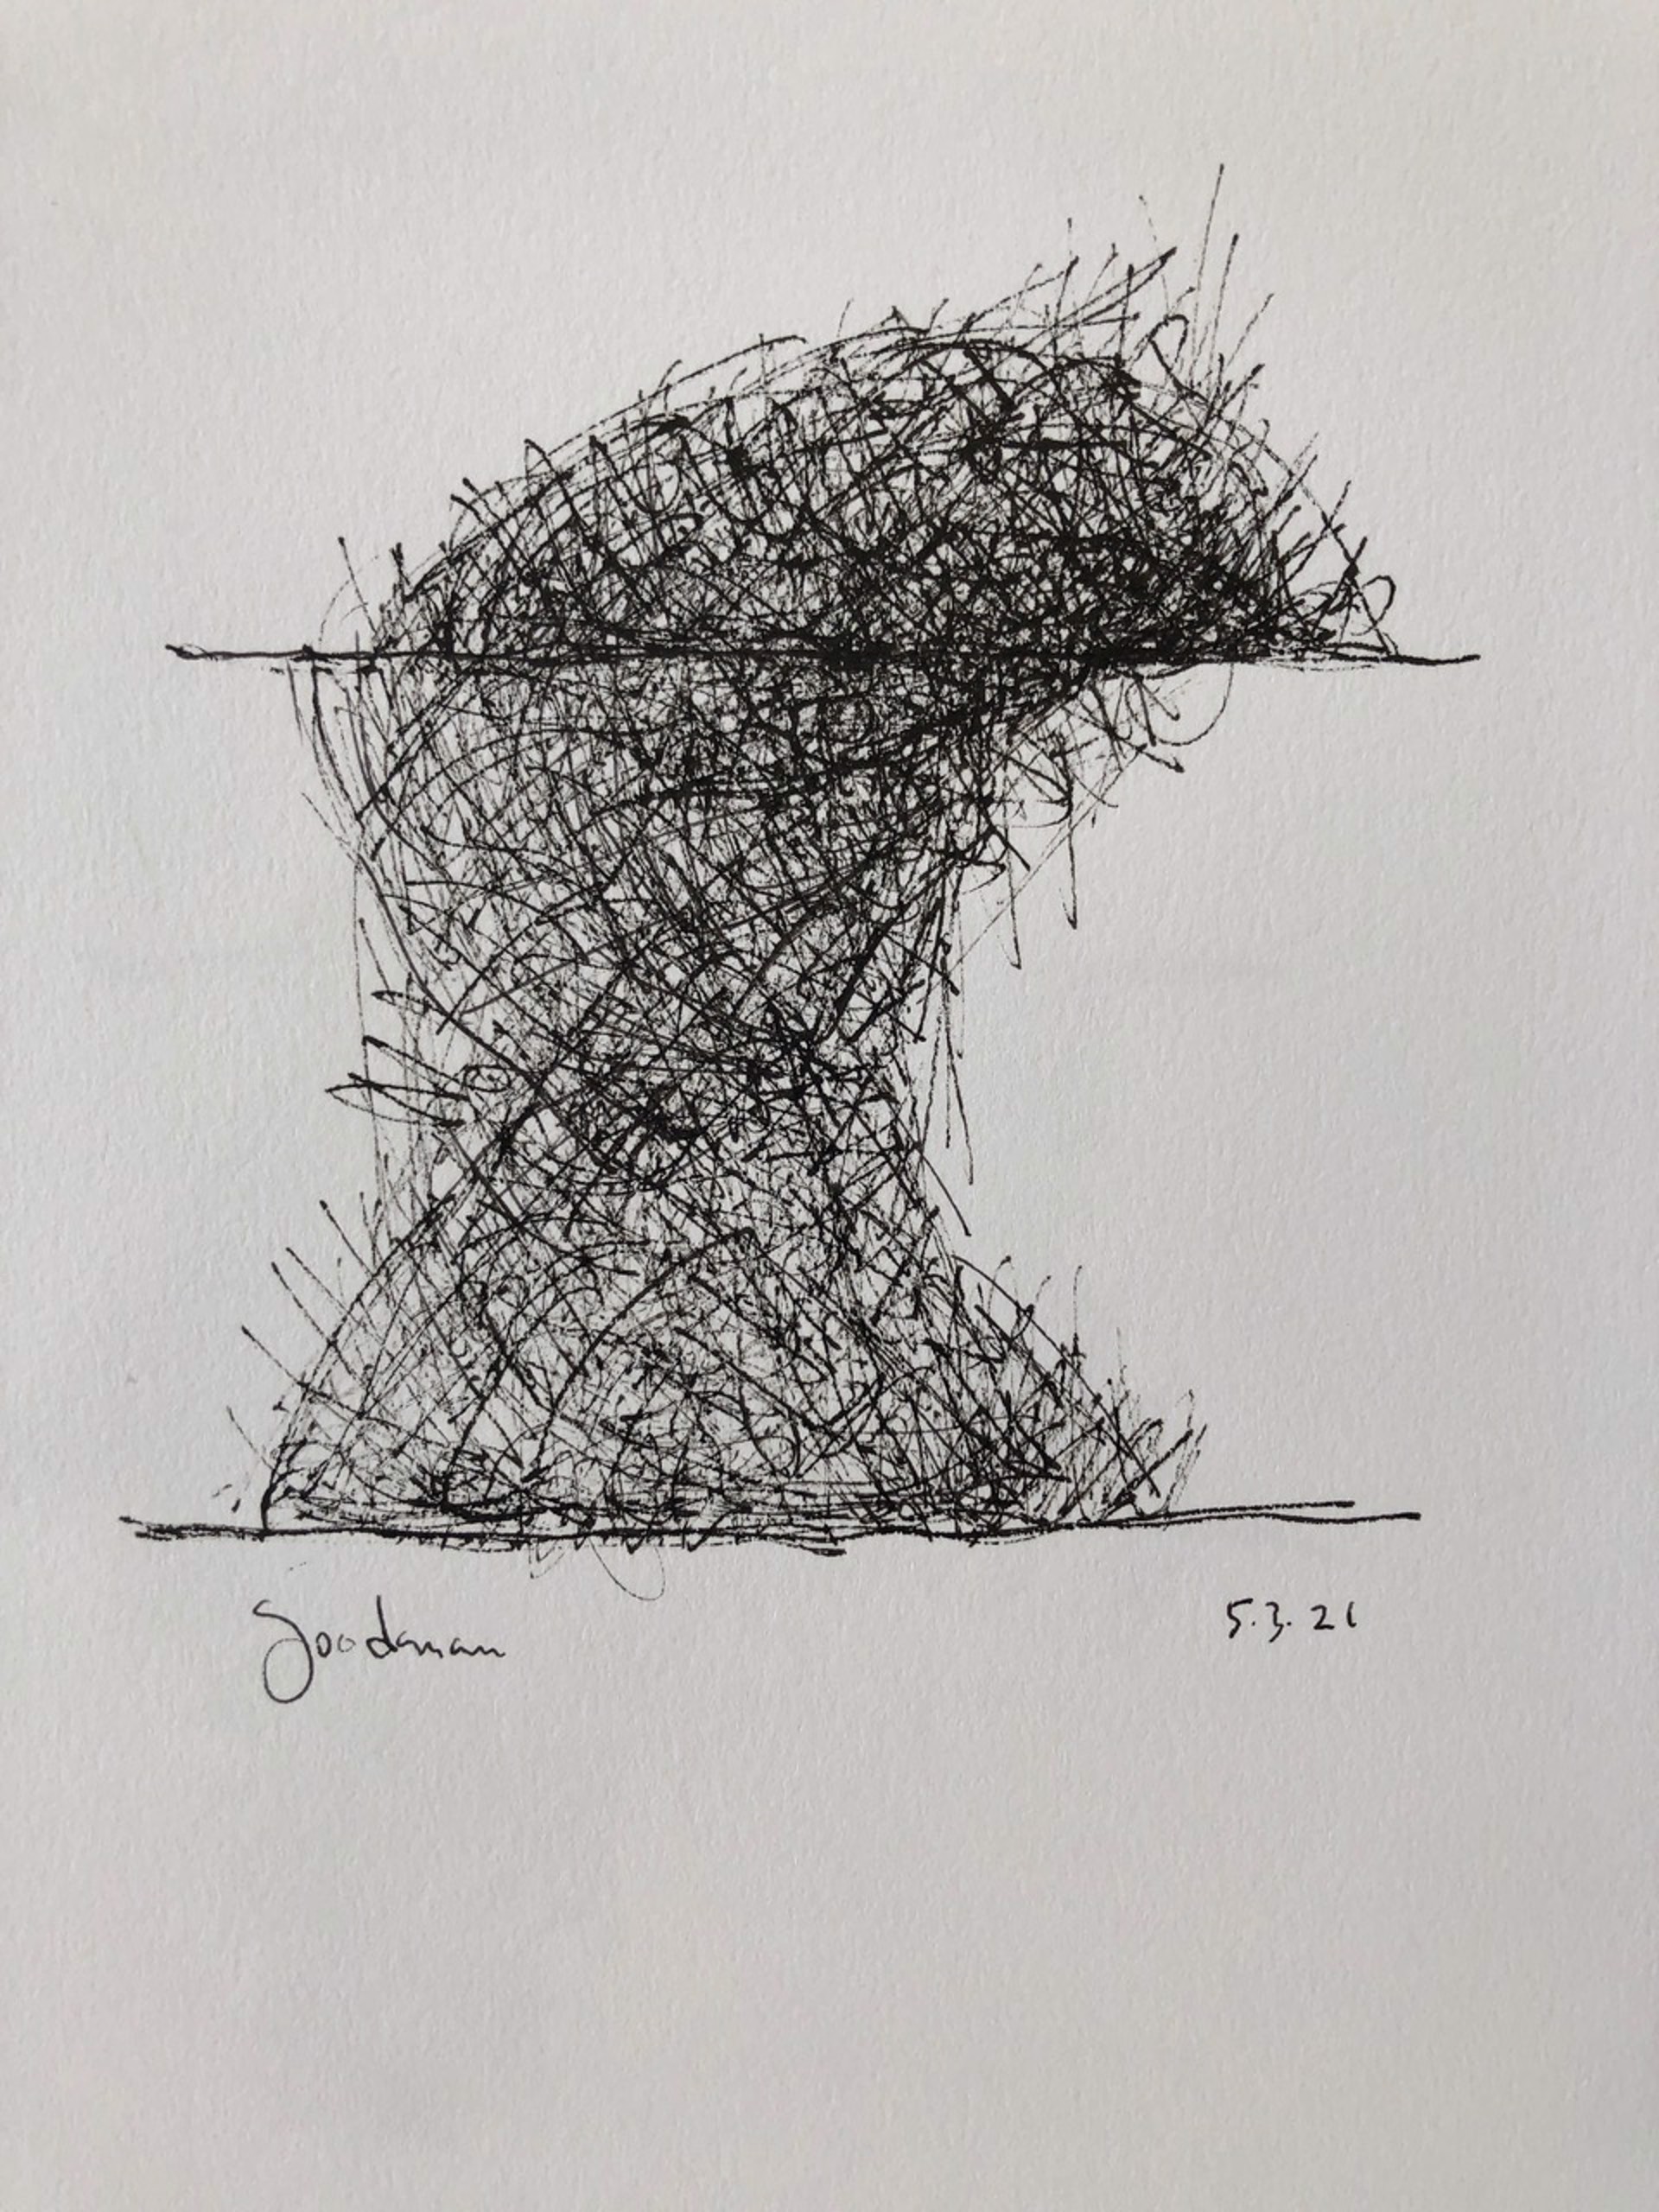 Abstract no.2, 2021 by John Goodman